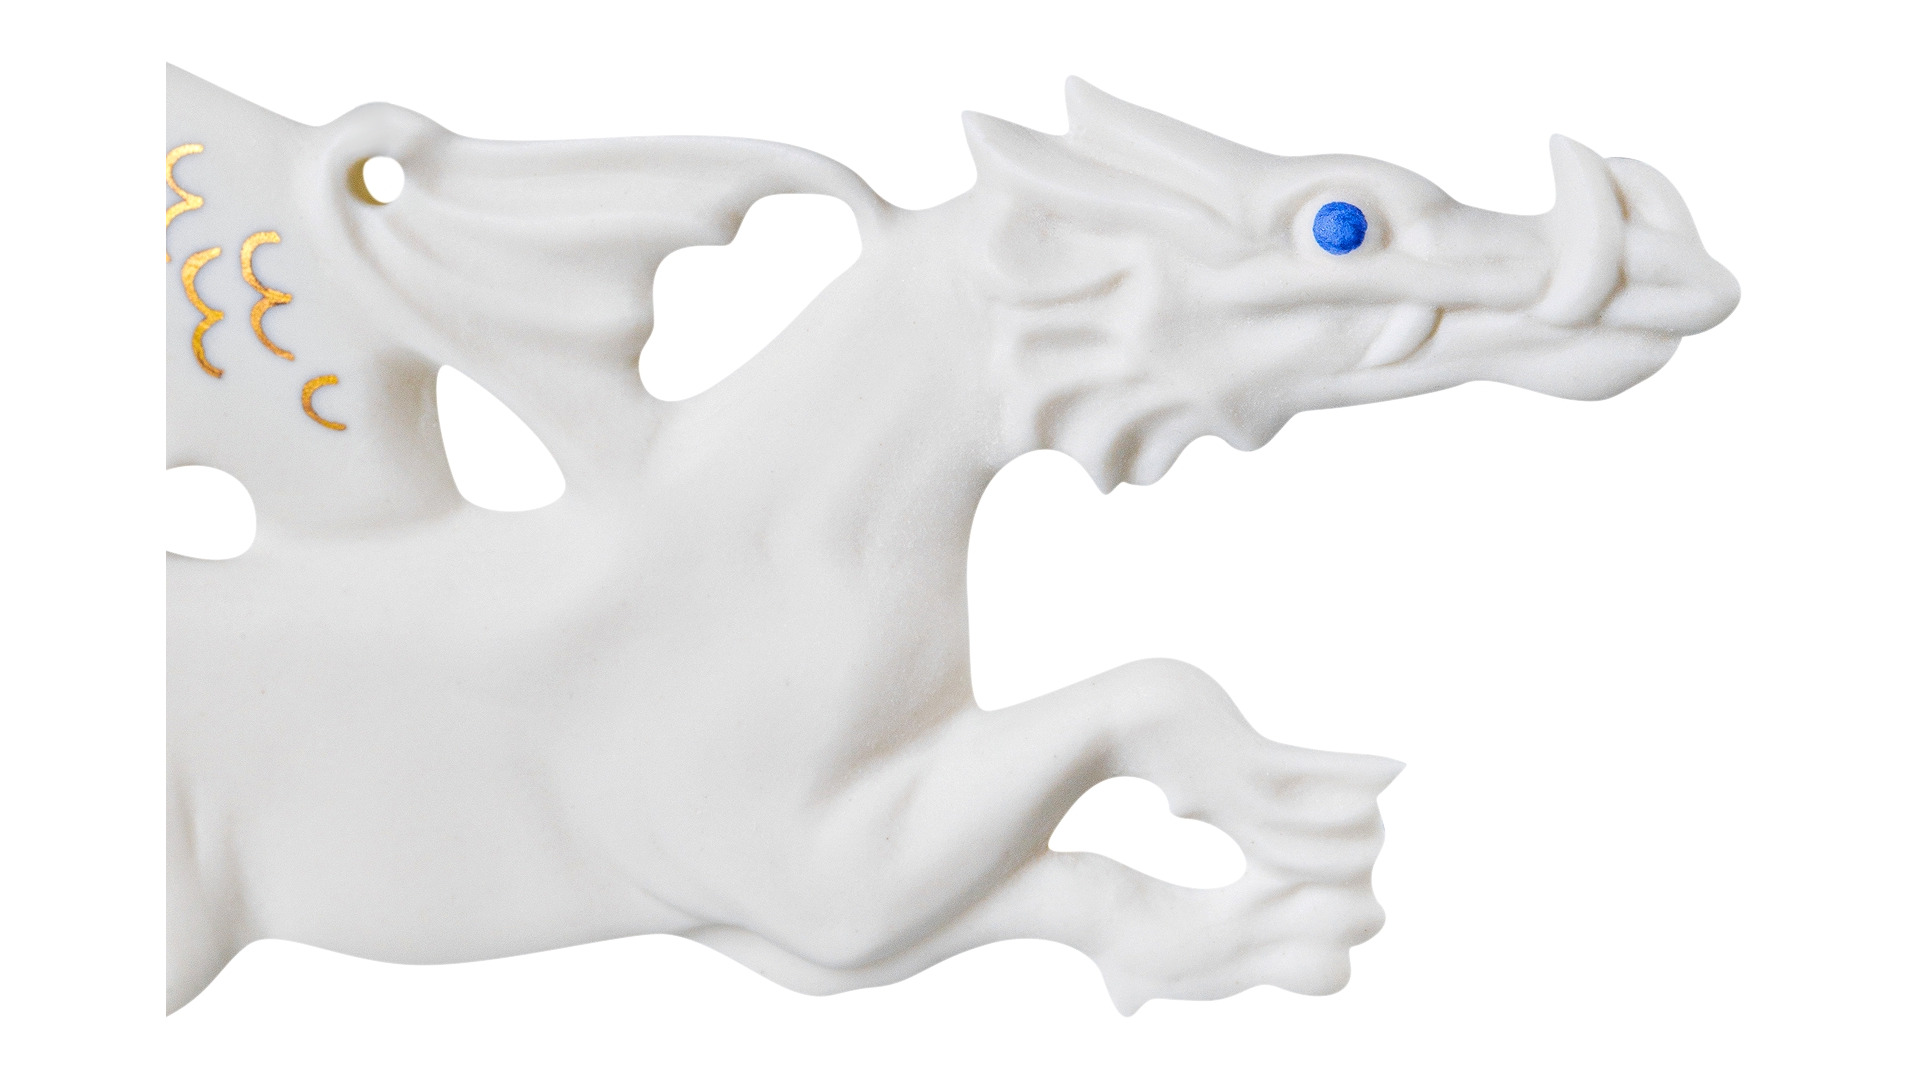 Игрушка елочная декорированная Klimenkoff Дракон 15х5 см, фарфор твердый, п/к